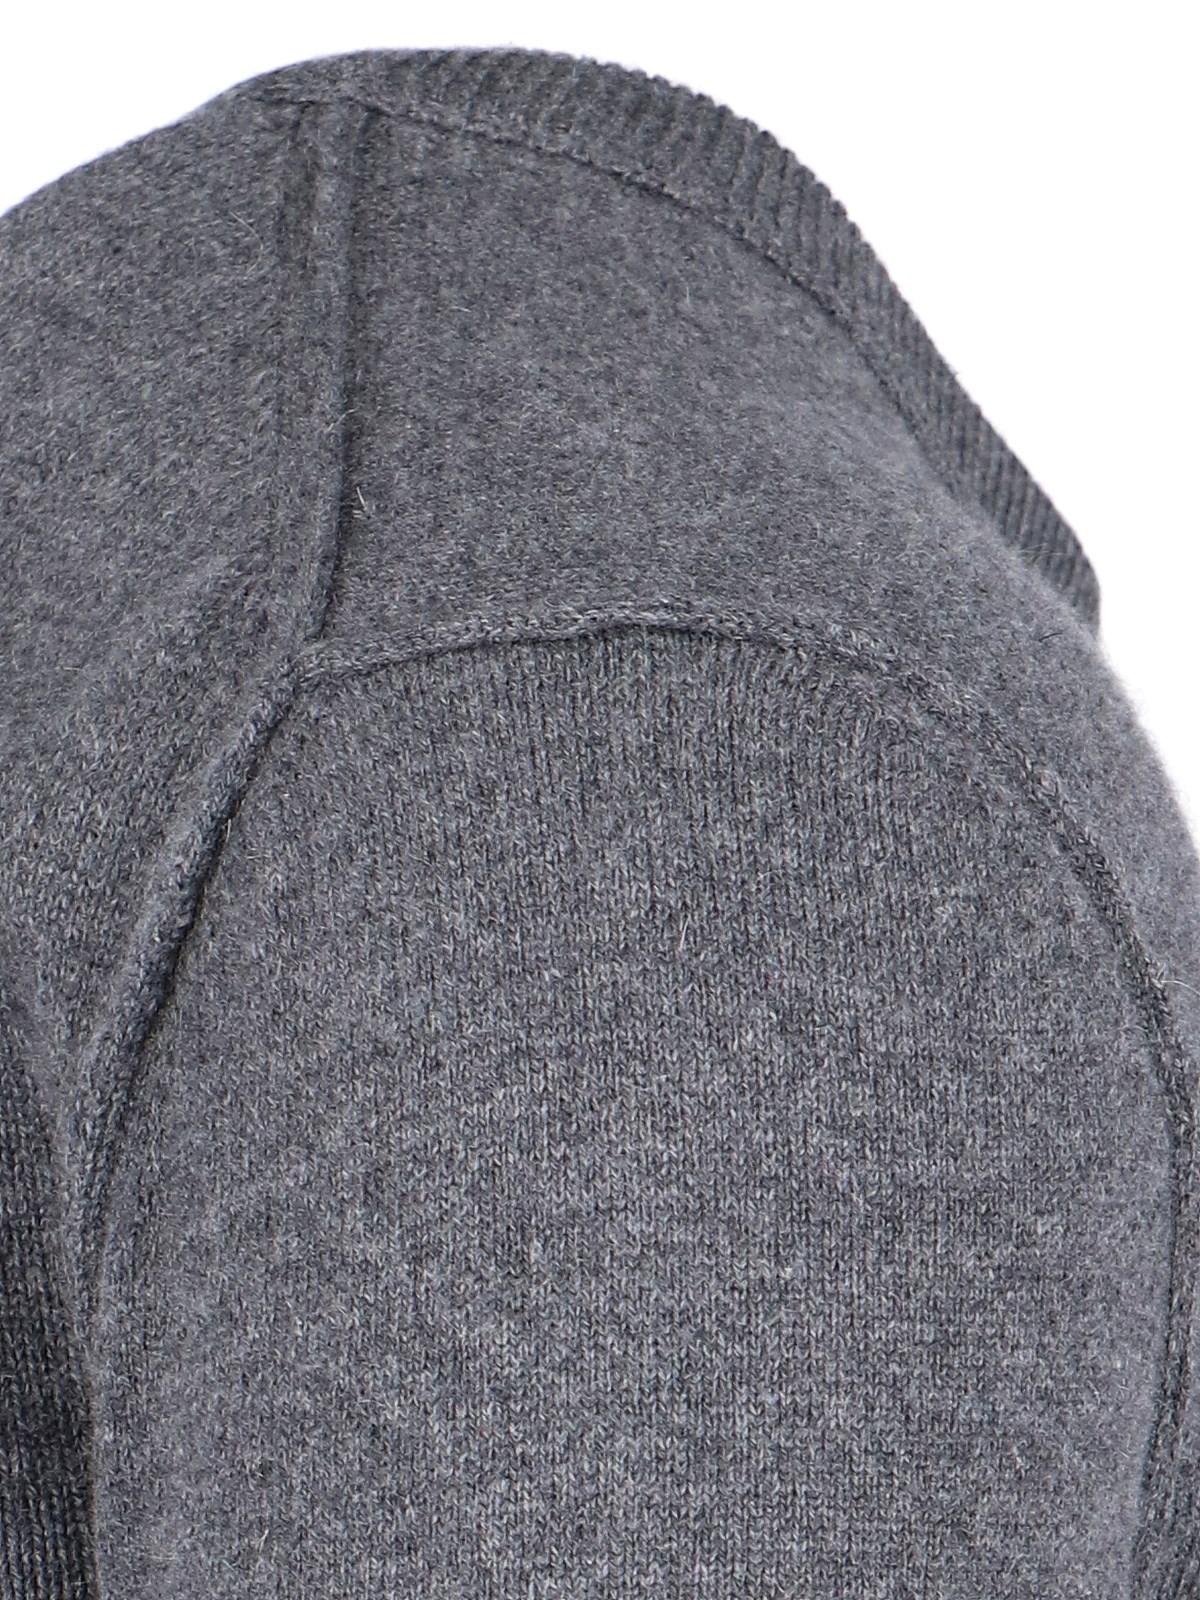 Maison Margiela Basic Sweater In Grey